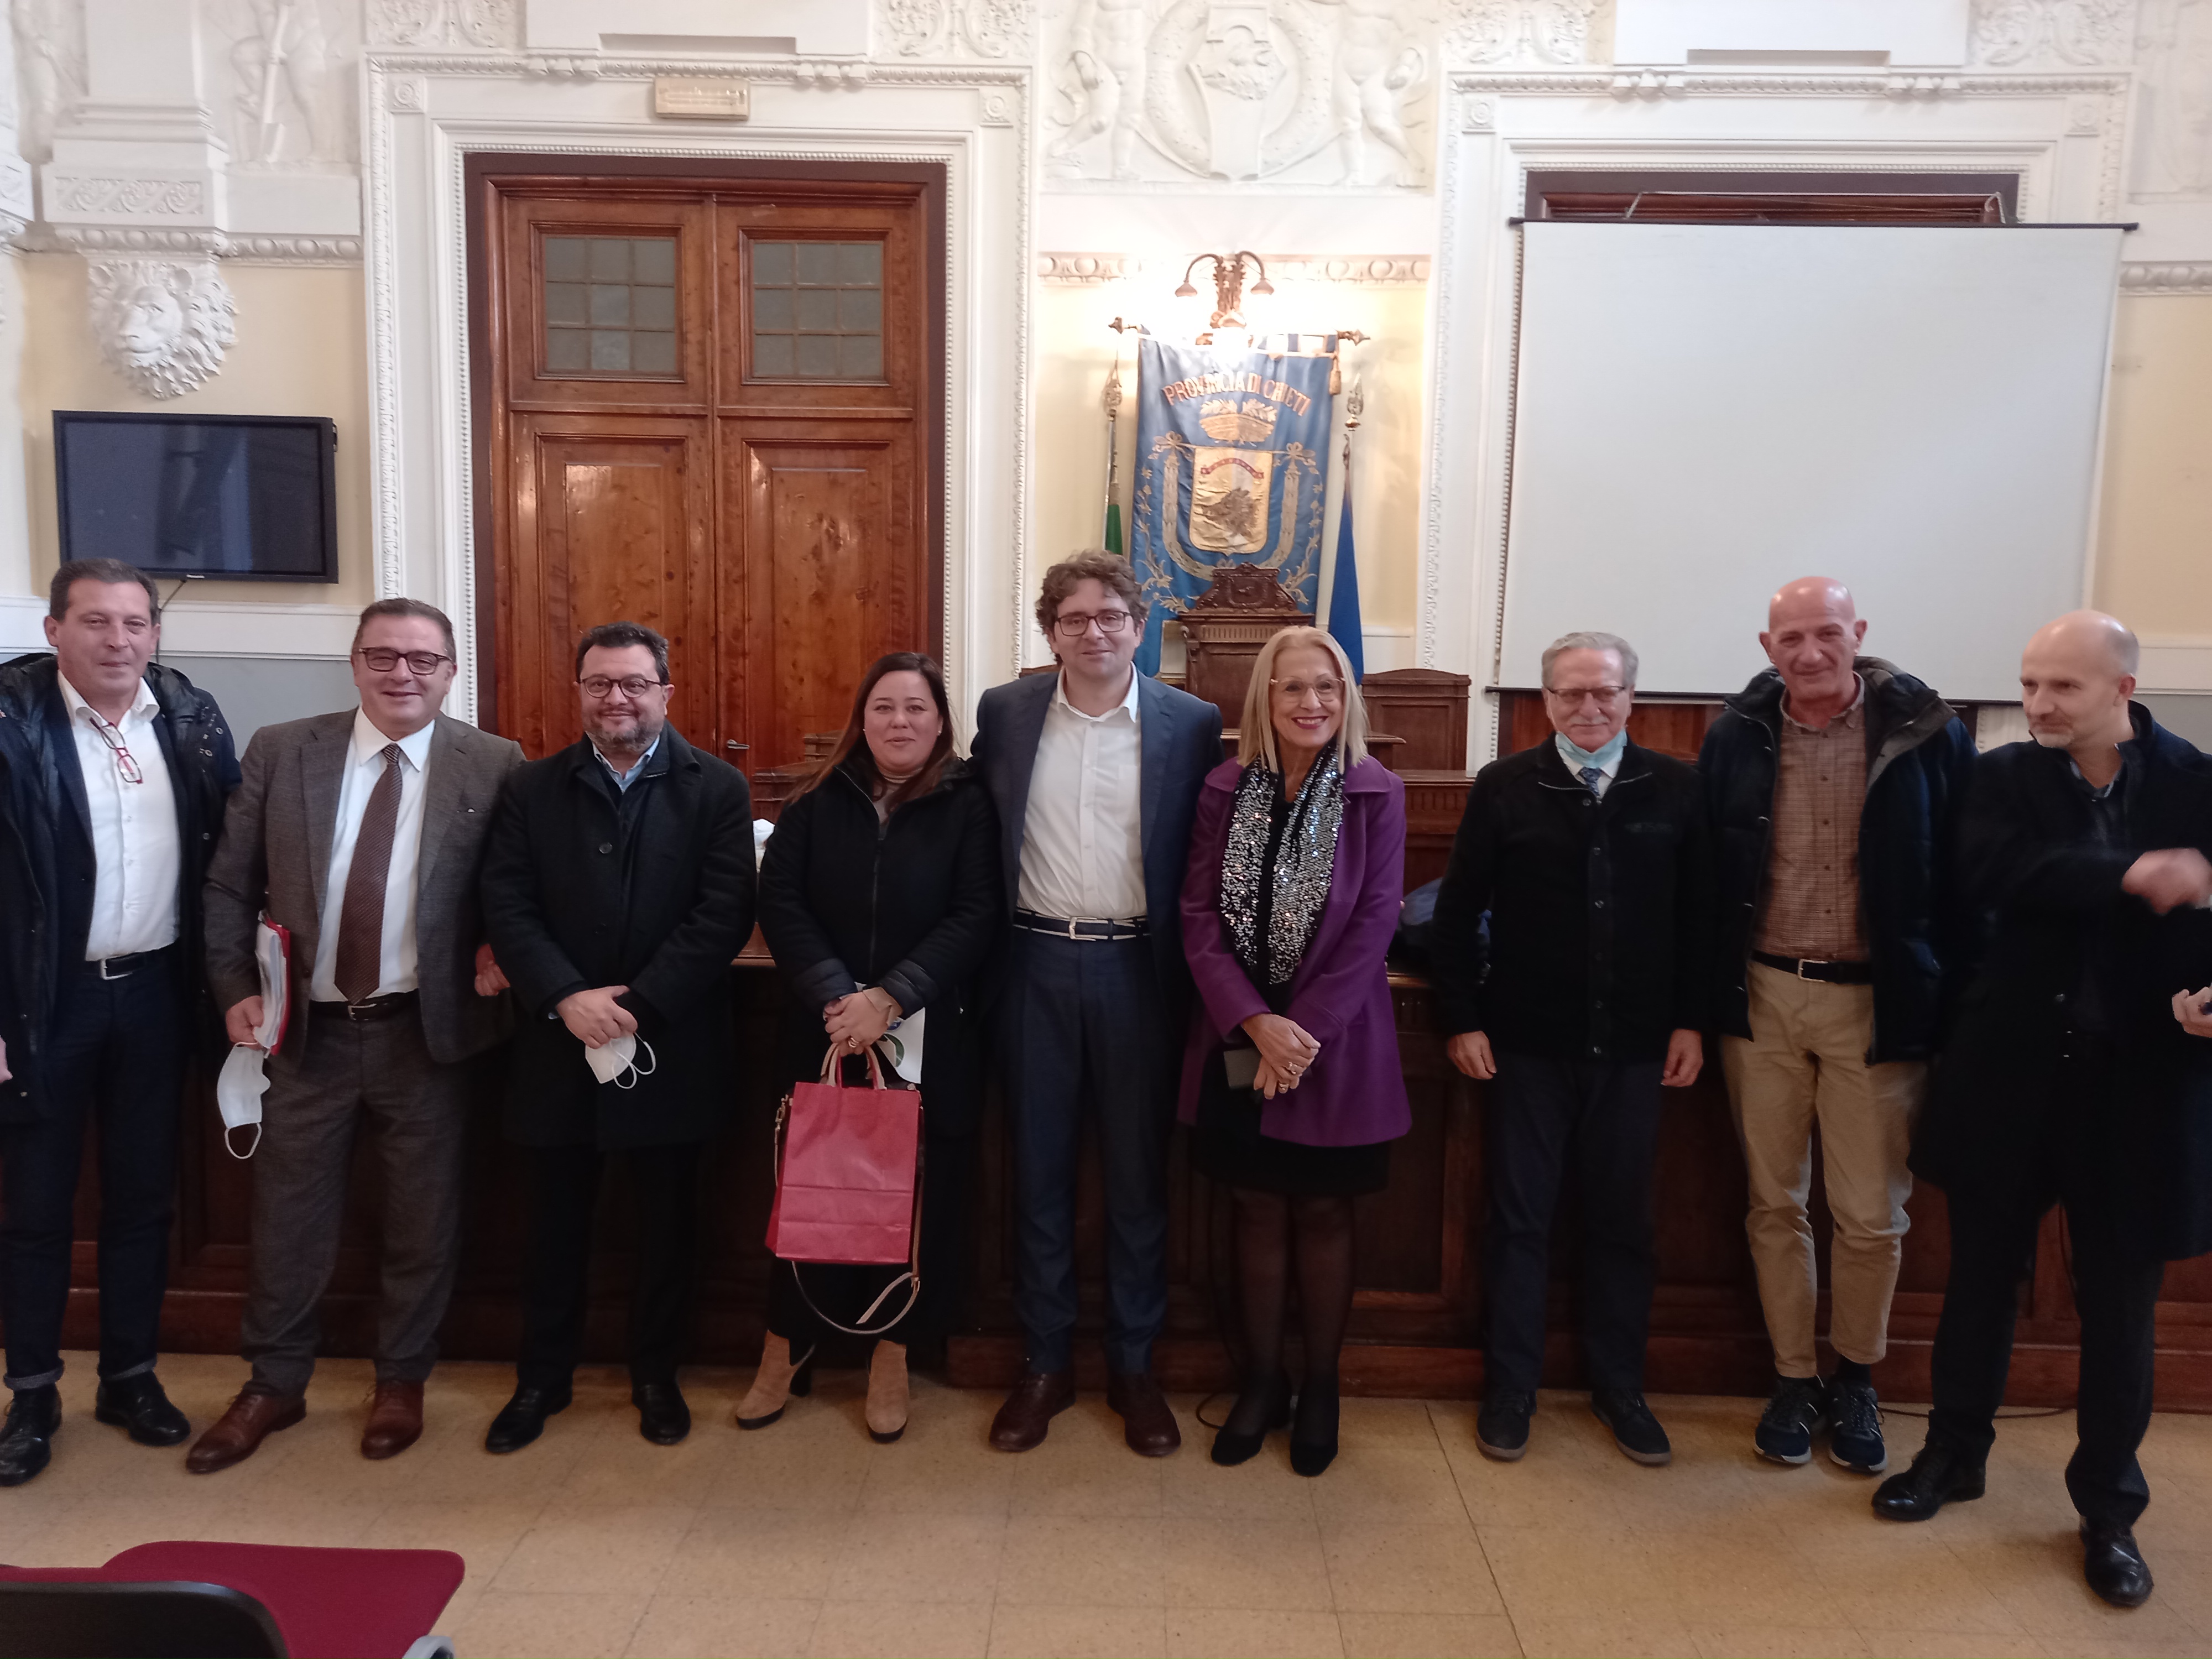 Elezioni provinciali Chieti, Francesco Menna: “Ecco gli obiettivi e le priorità”